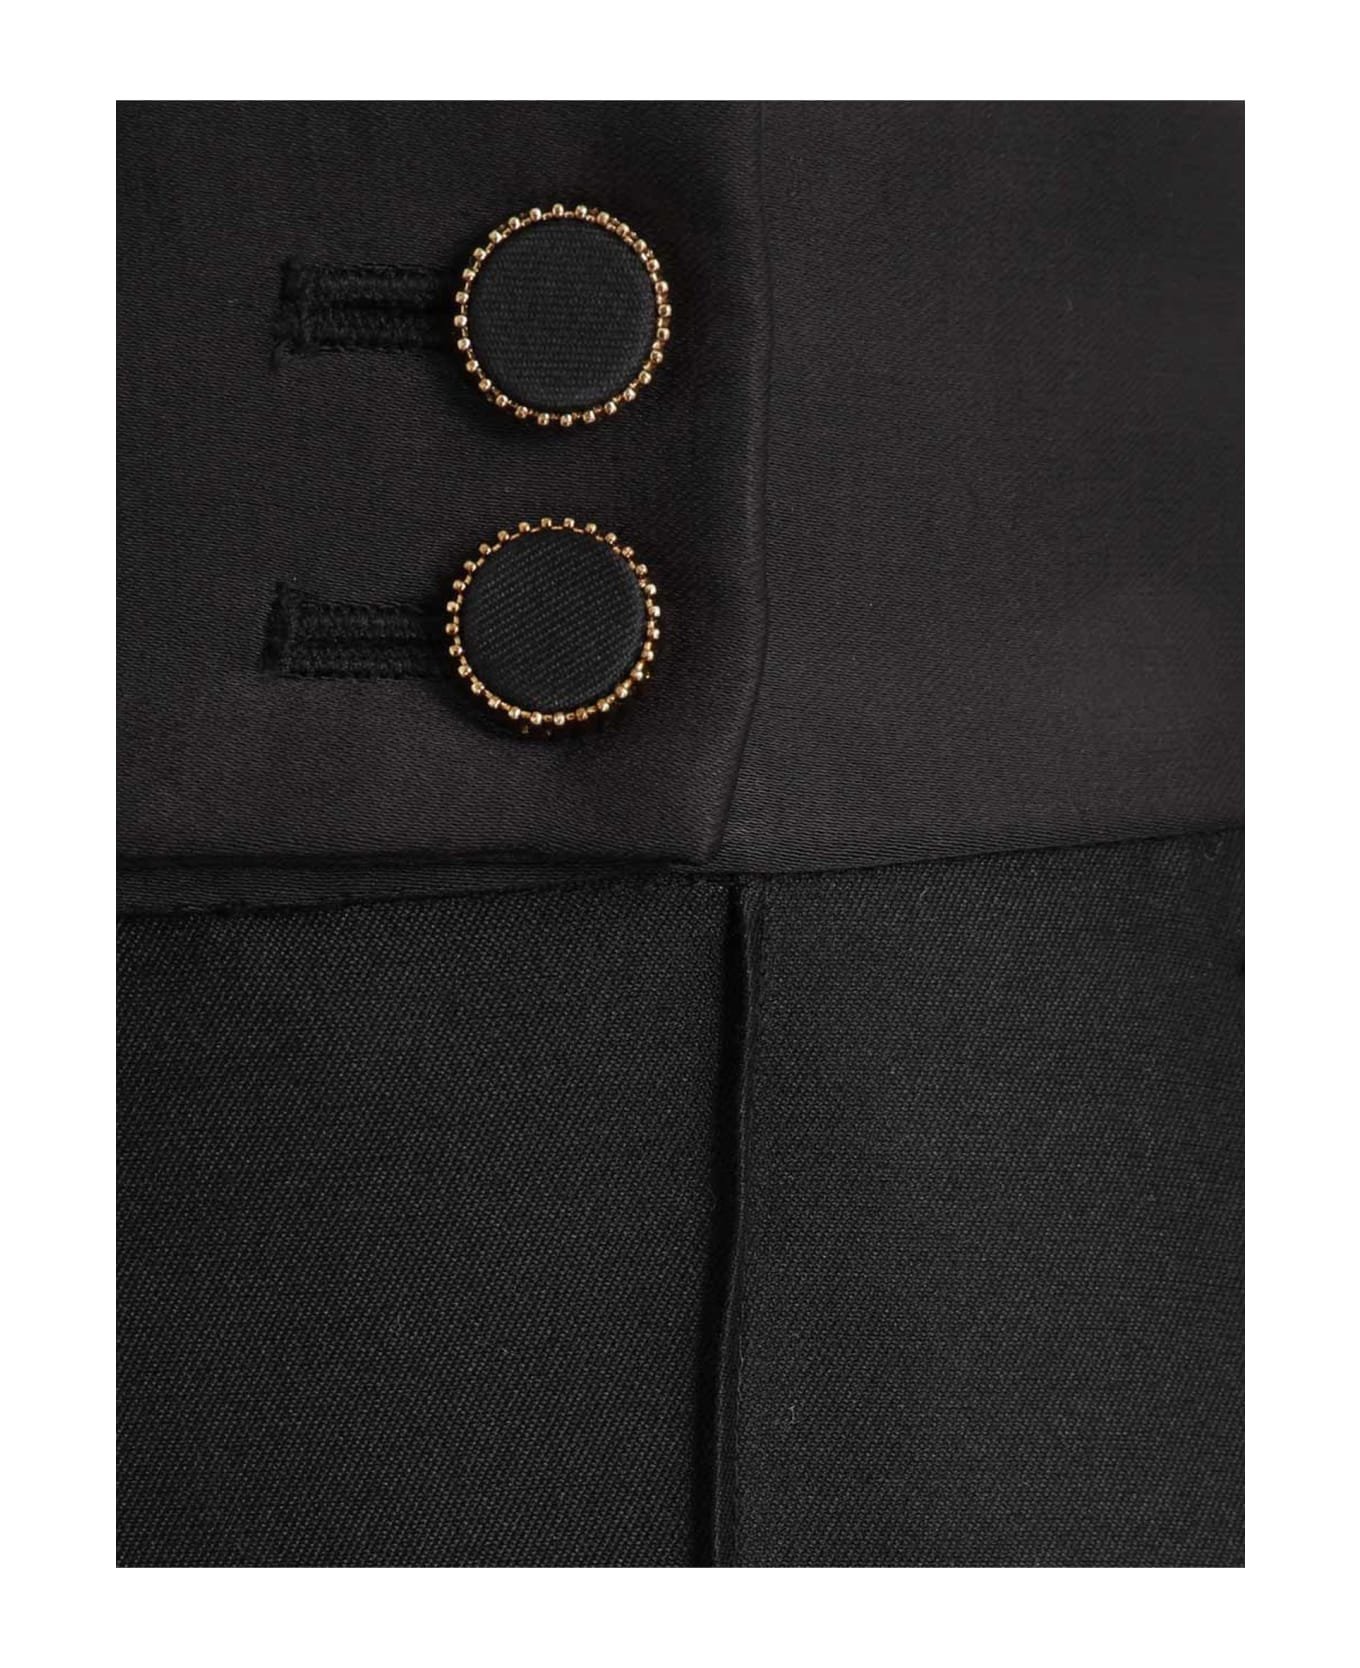 Zimmermann Luminosity Tuxedo Pant In Black - Nero ボトムス